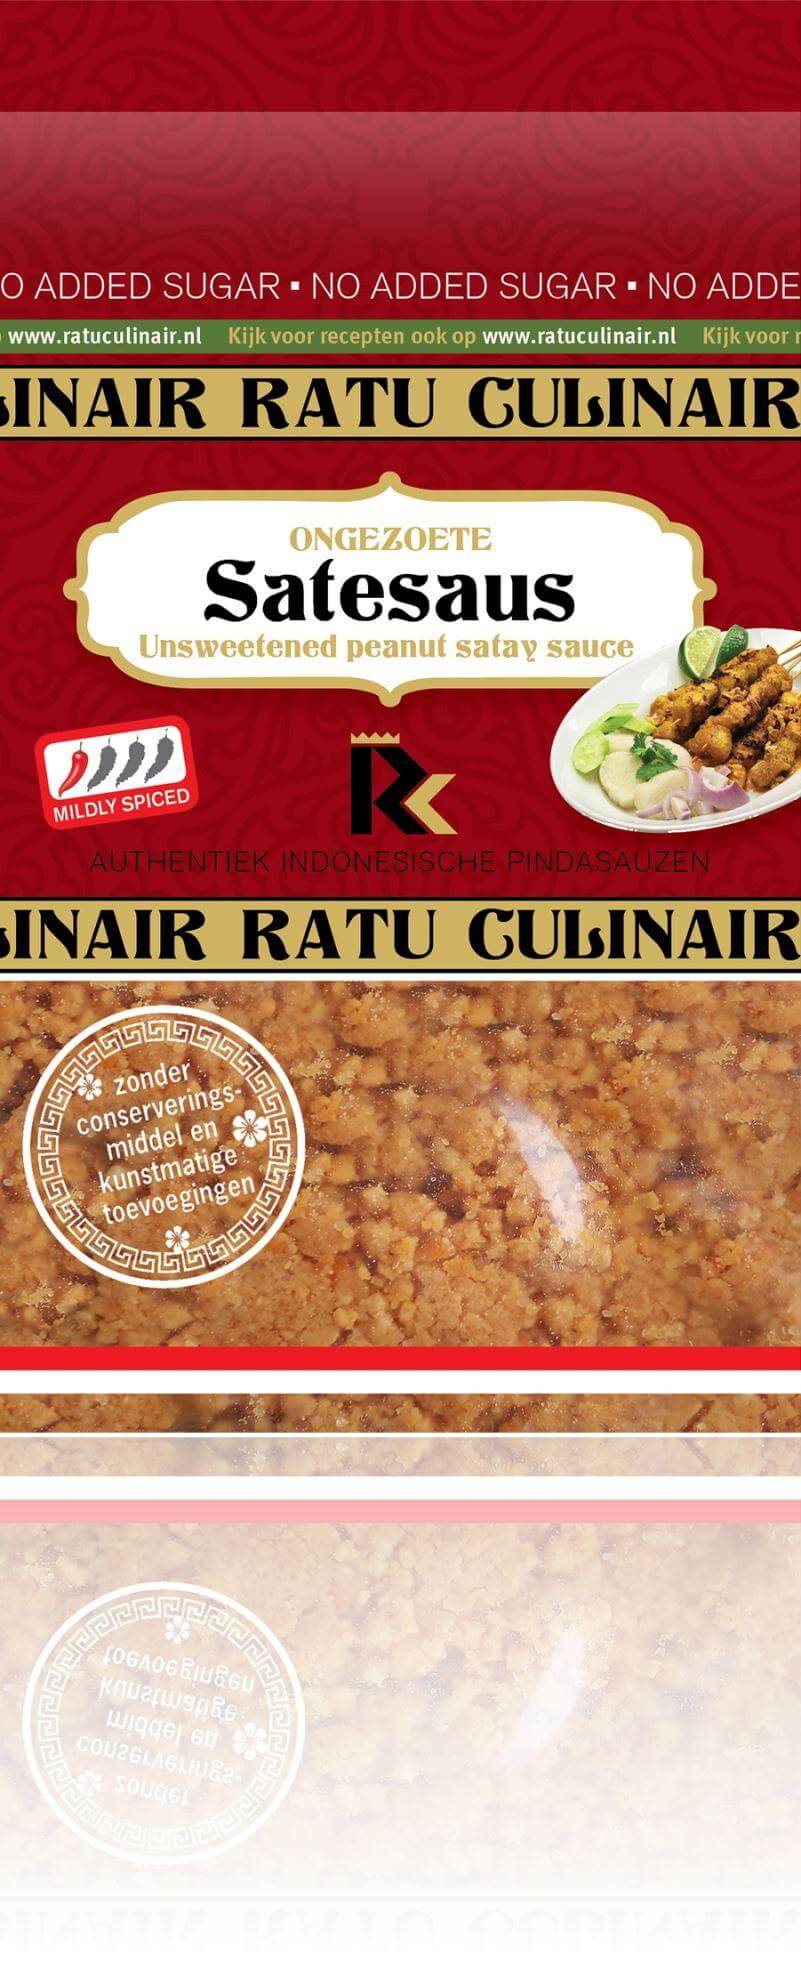 Sat?saus glutenvrij gemaakt door de Indonesische koks van Ratu Culinair in de buurt van Nieuwegein